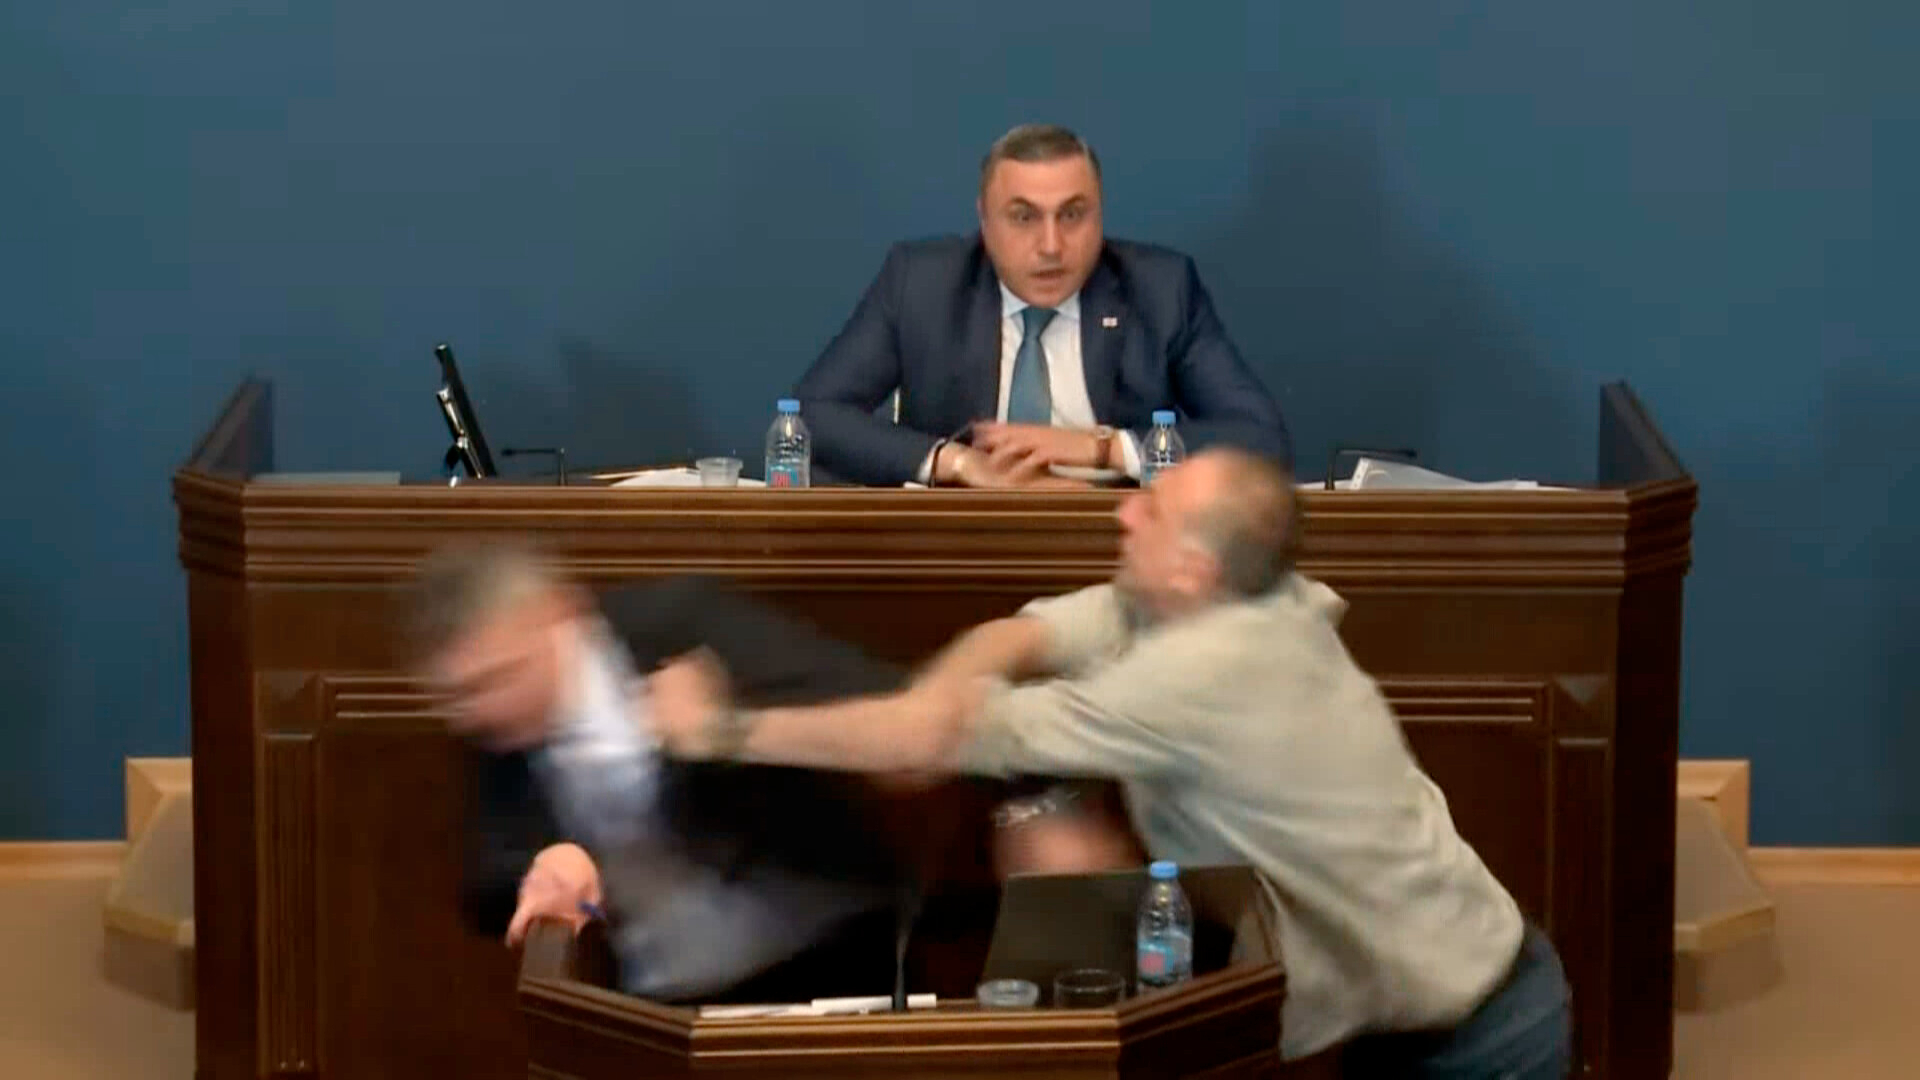 Schlagfeste Argumente live im Fernsehen: Der Abgeordnete Aleko Elisaschwili (r.) greift im georgischen Parlament einen Redner der Regierungspartei an, als dieser gerade das „Putin-Gesetz“ verteidigen will